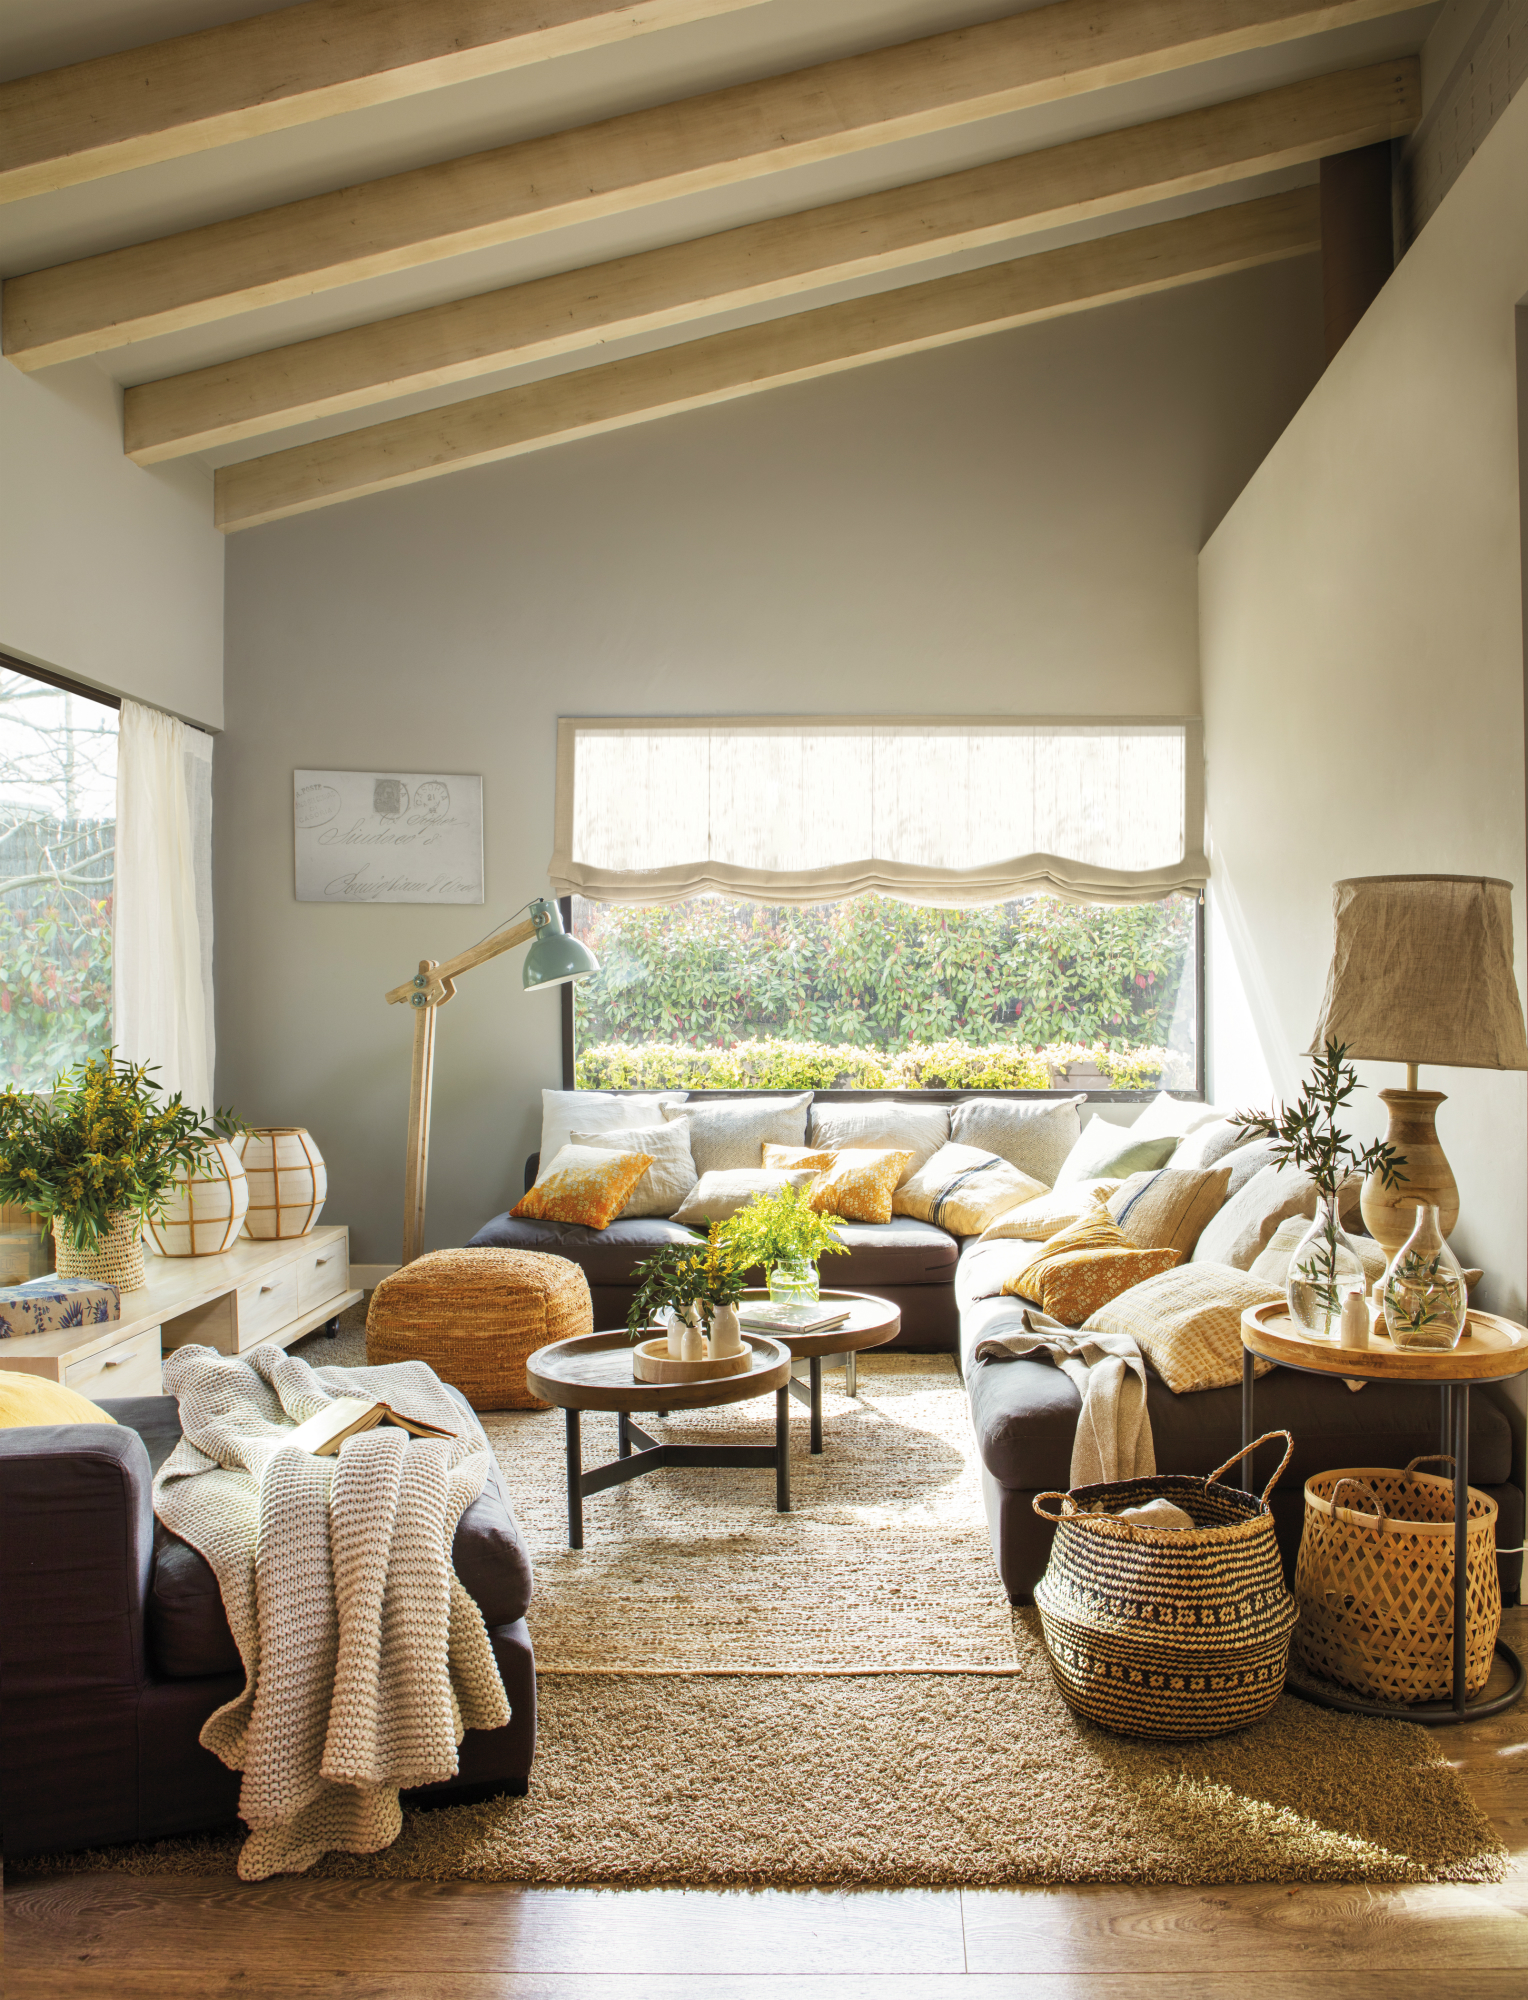 Salón moderno abuhardillado con sofá rinconero, vigas en el techo y alfombra.